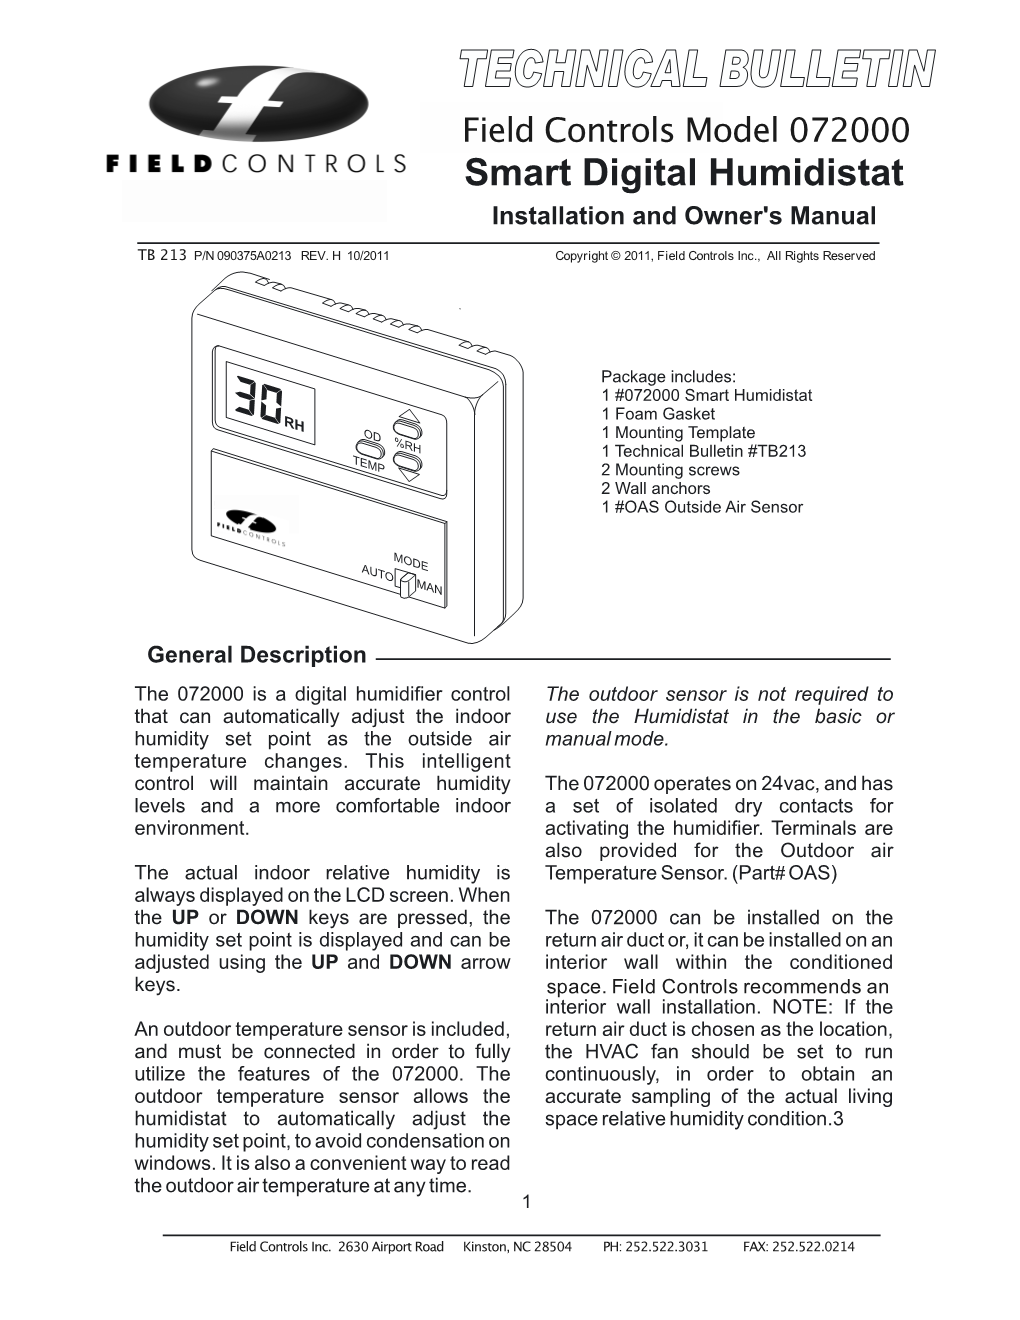 Digital Humidistat Model 072000 Installation Manual & Wiring Diagram